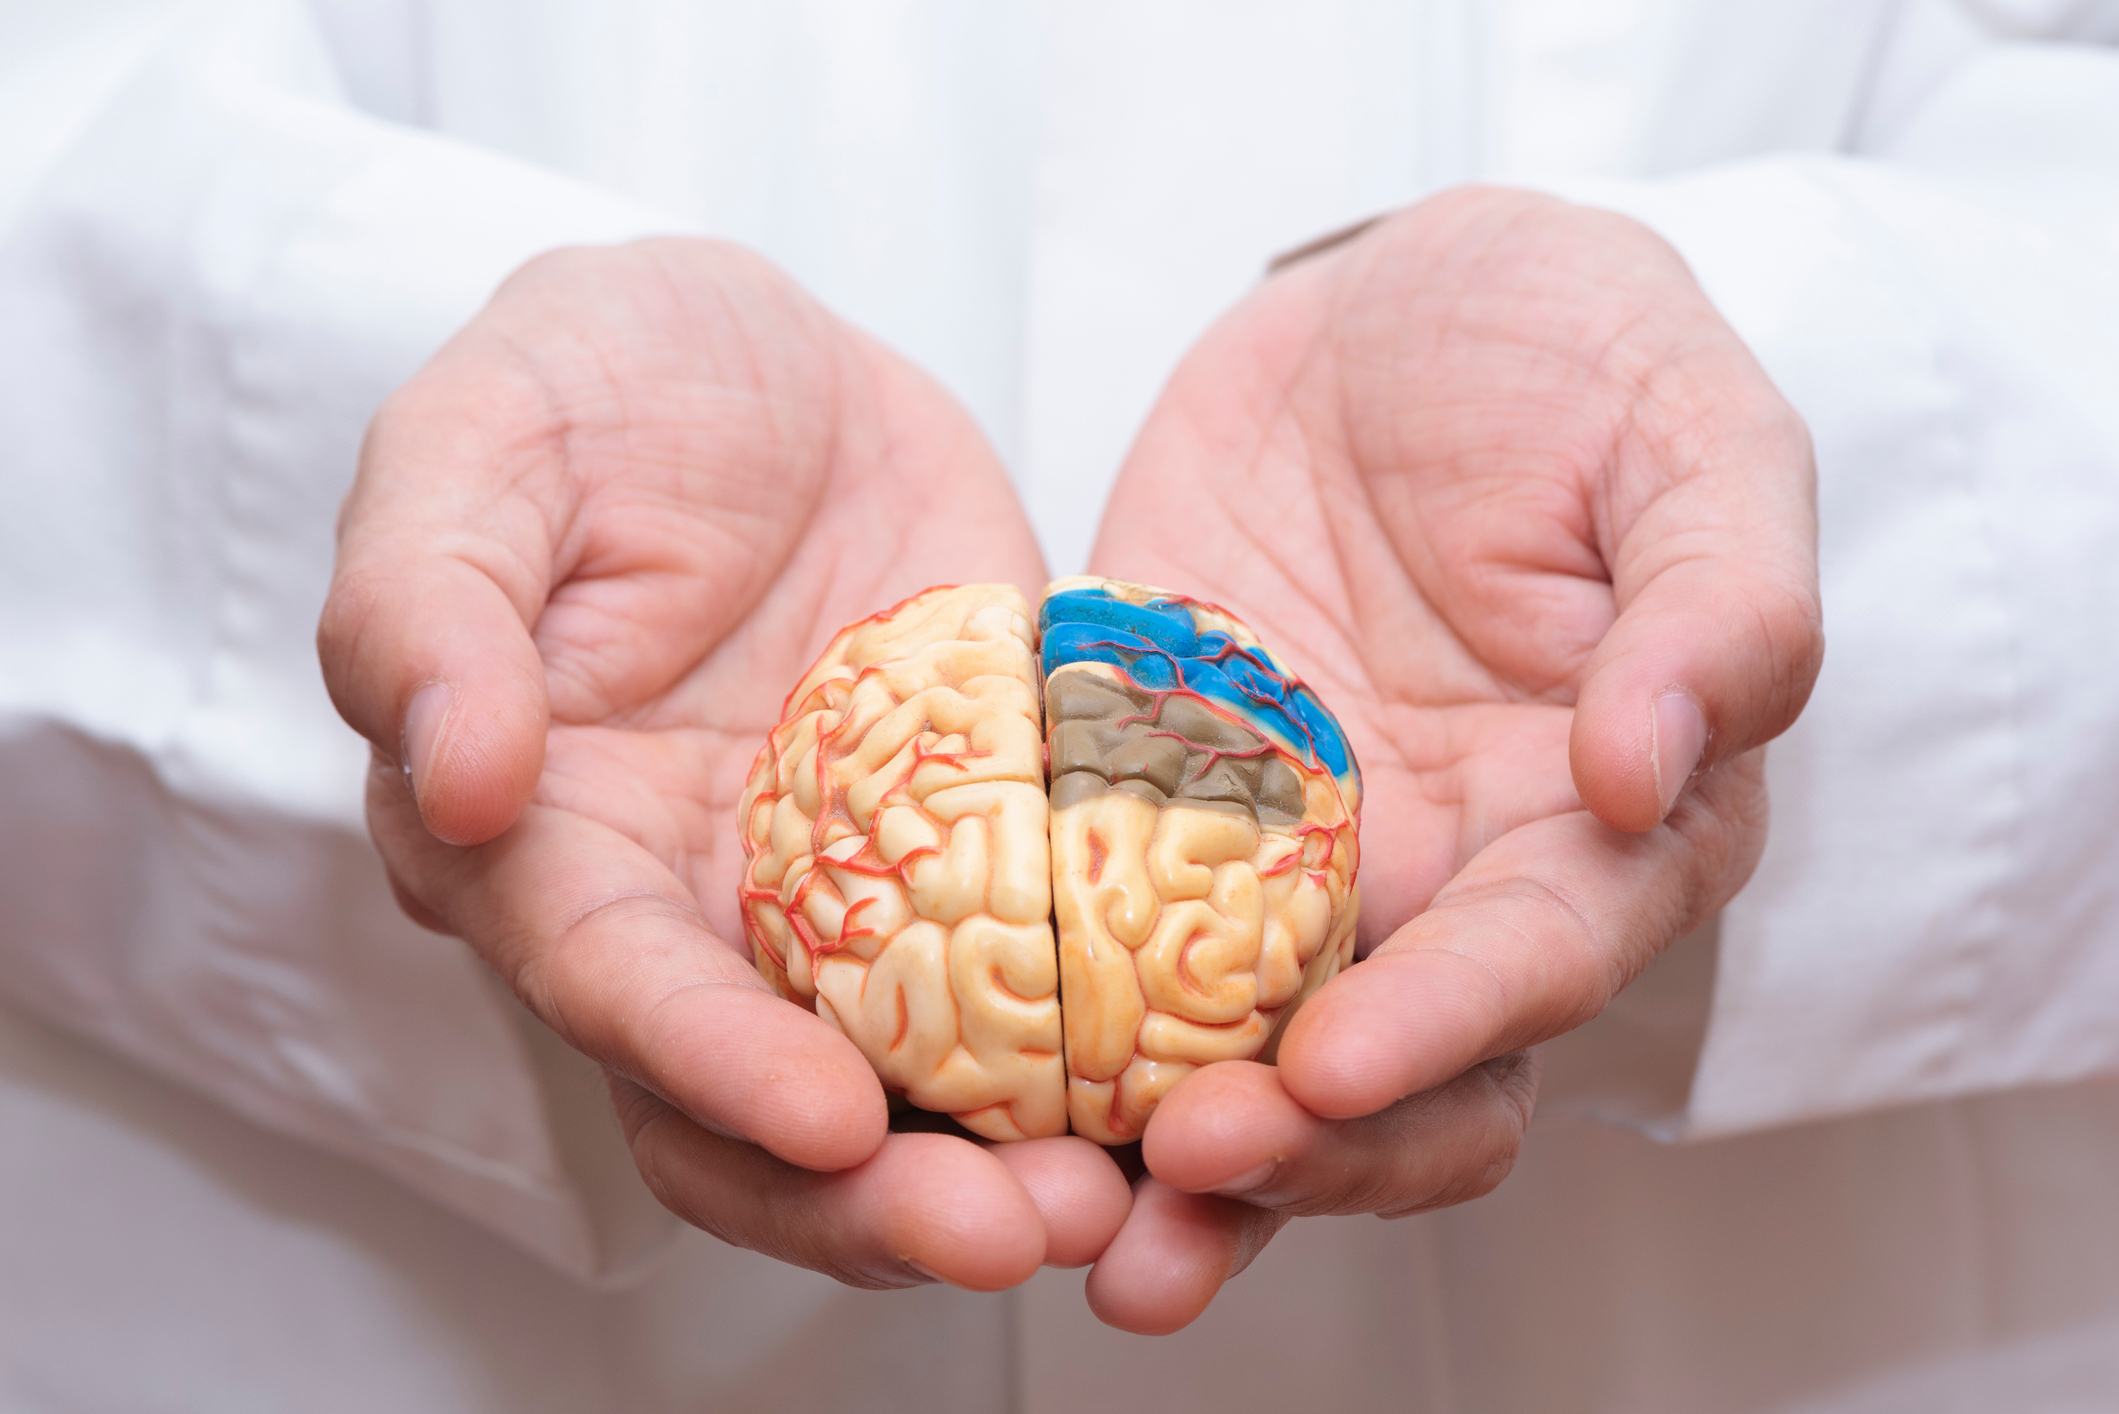 معلومات كاملة عن الدماغ المتوسط ​​، بما في ذلك هيكله ووظيفته واضطراباته